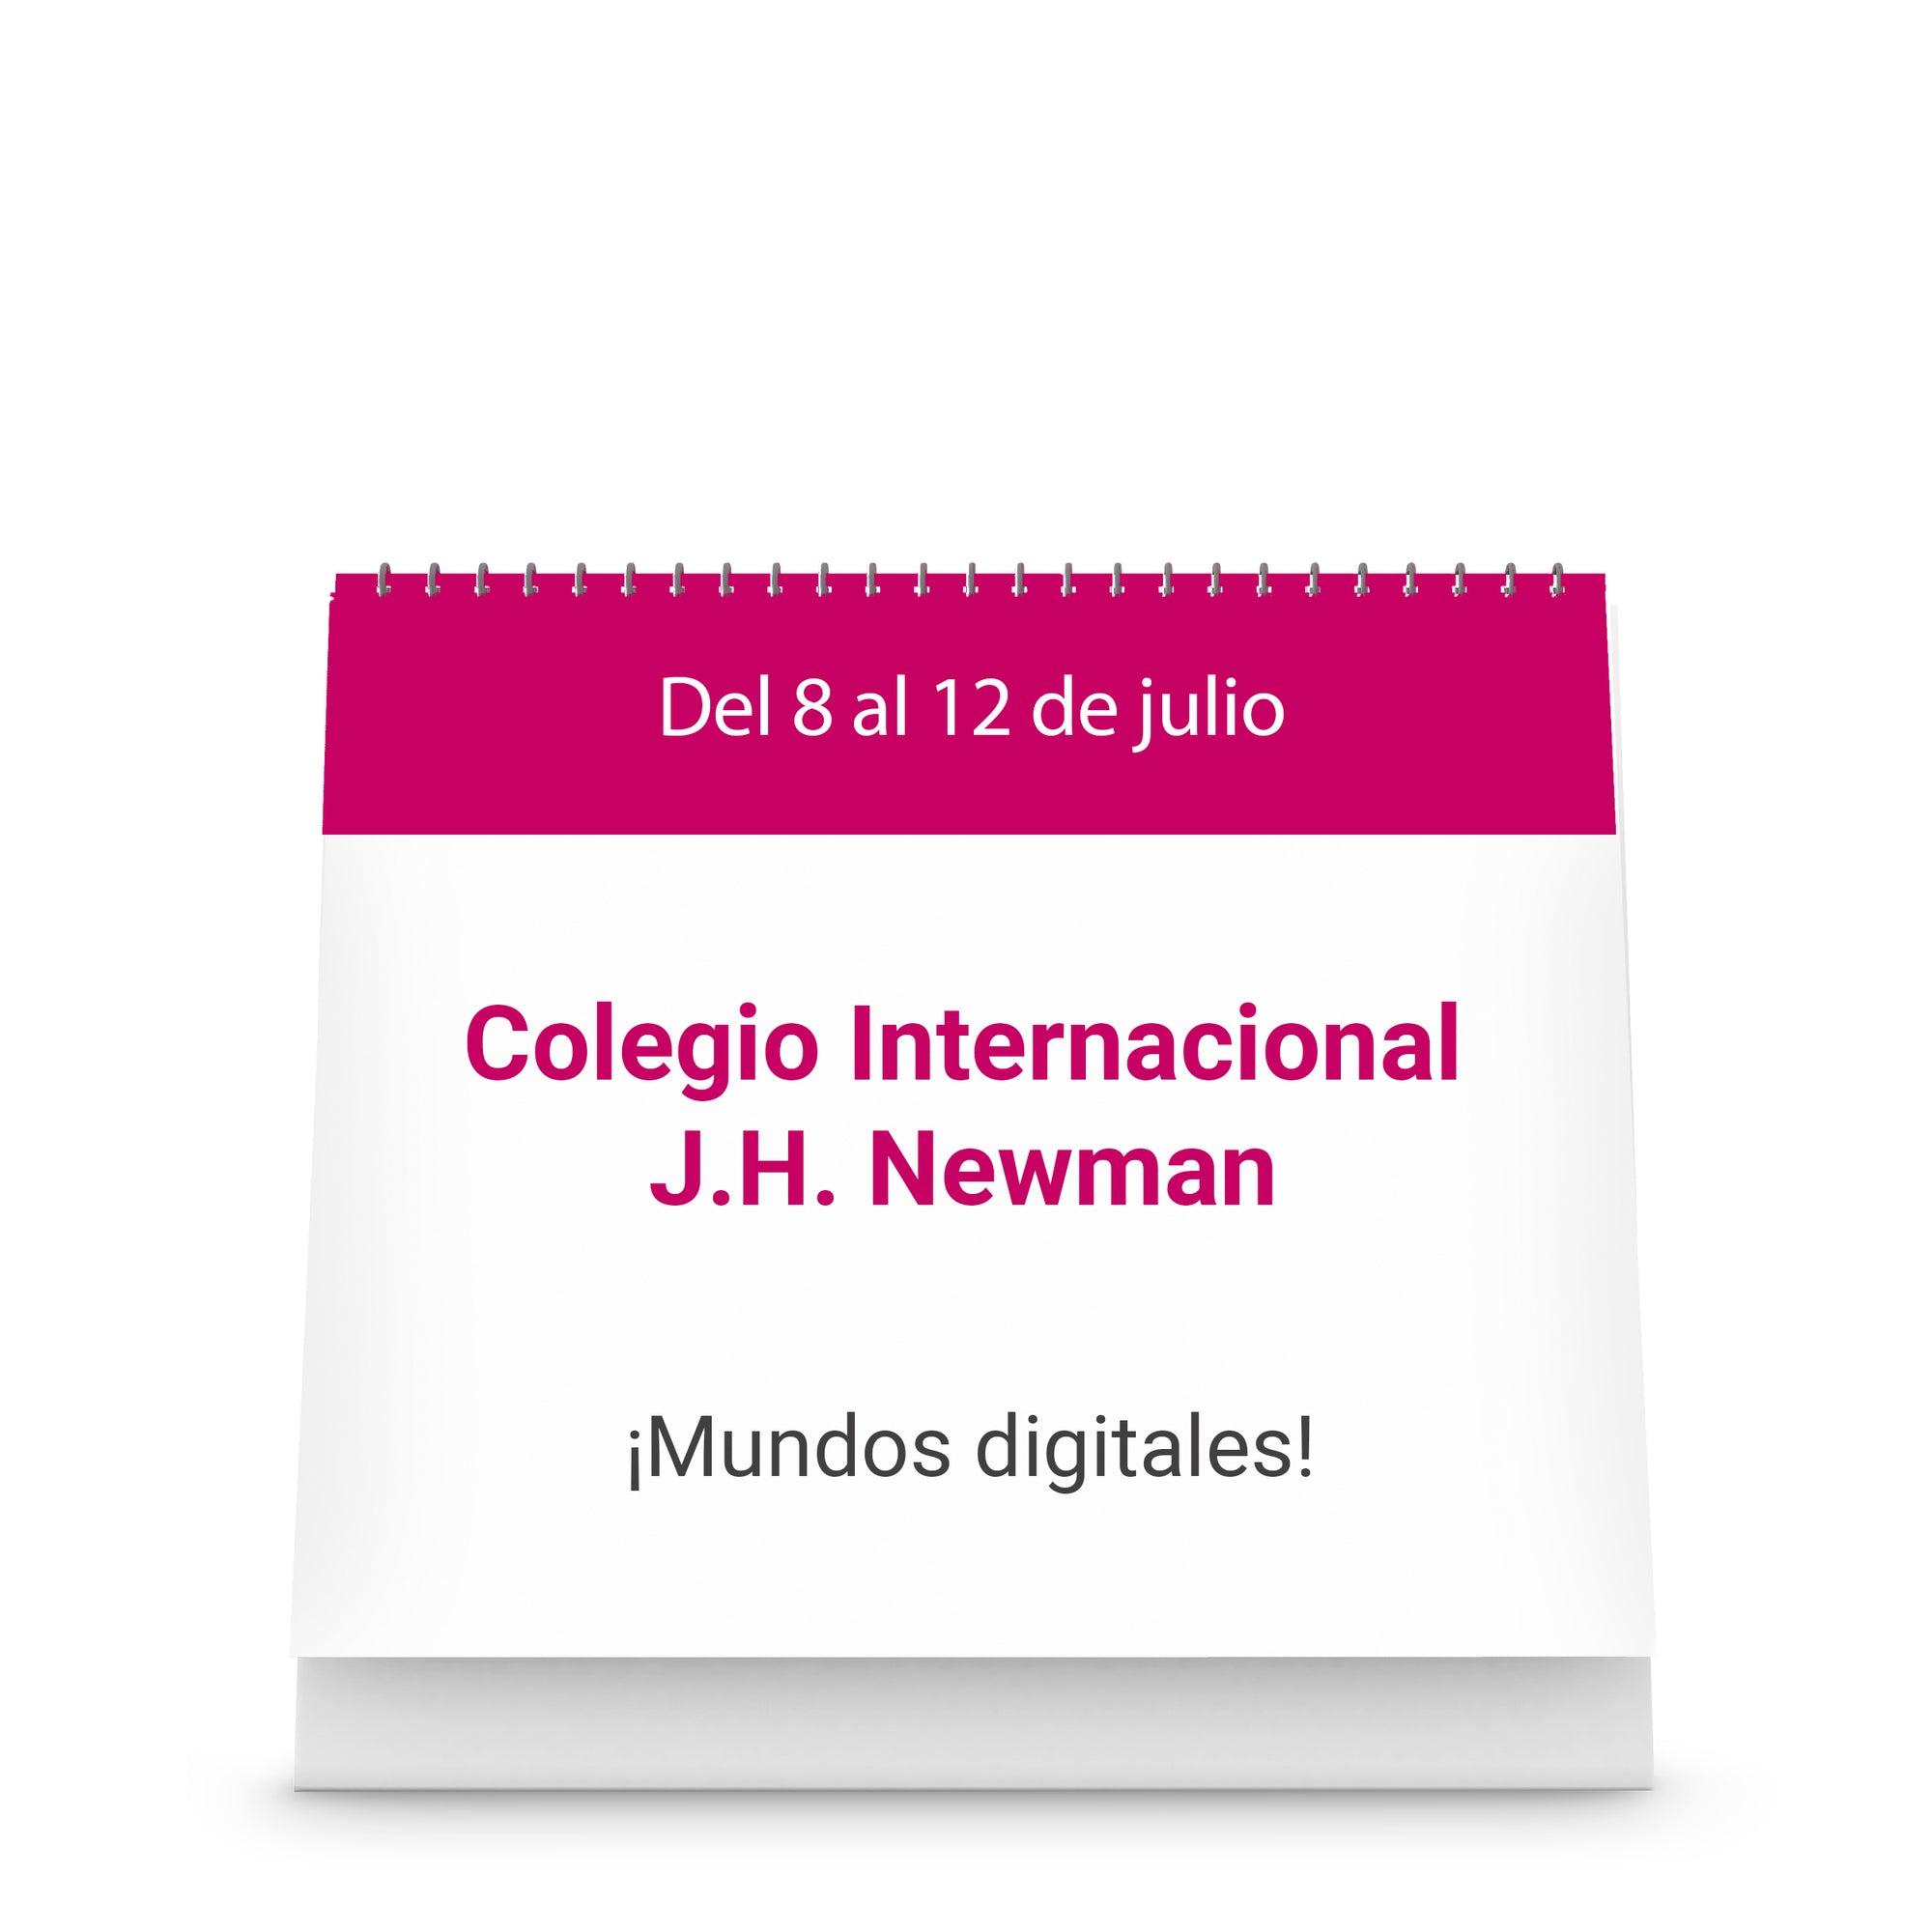 Colegio J.H. Newman - ¡Mundos digitales!